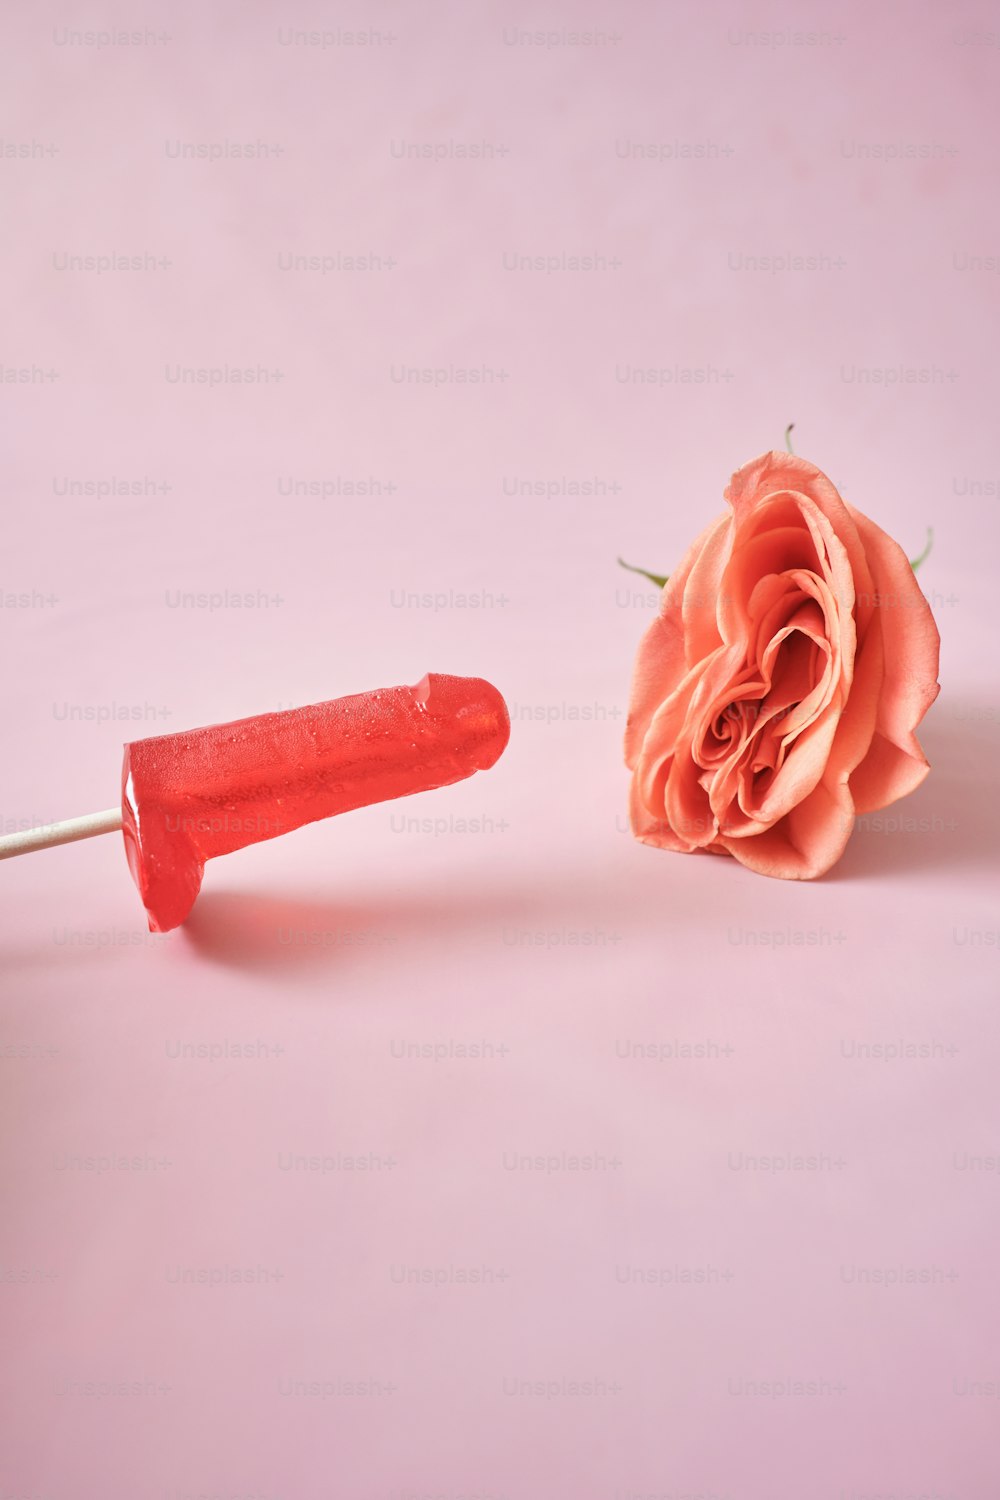 eine rosa Rose und ein rotes Plastikobjekt auf rosa Hintergrund